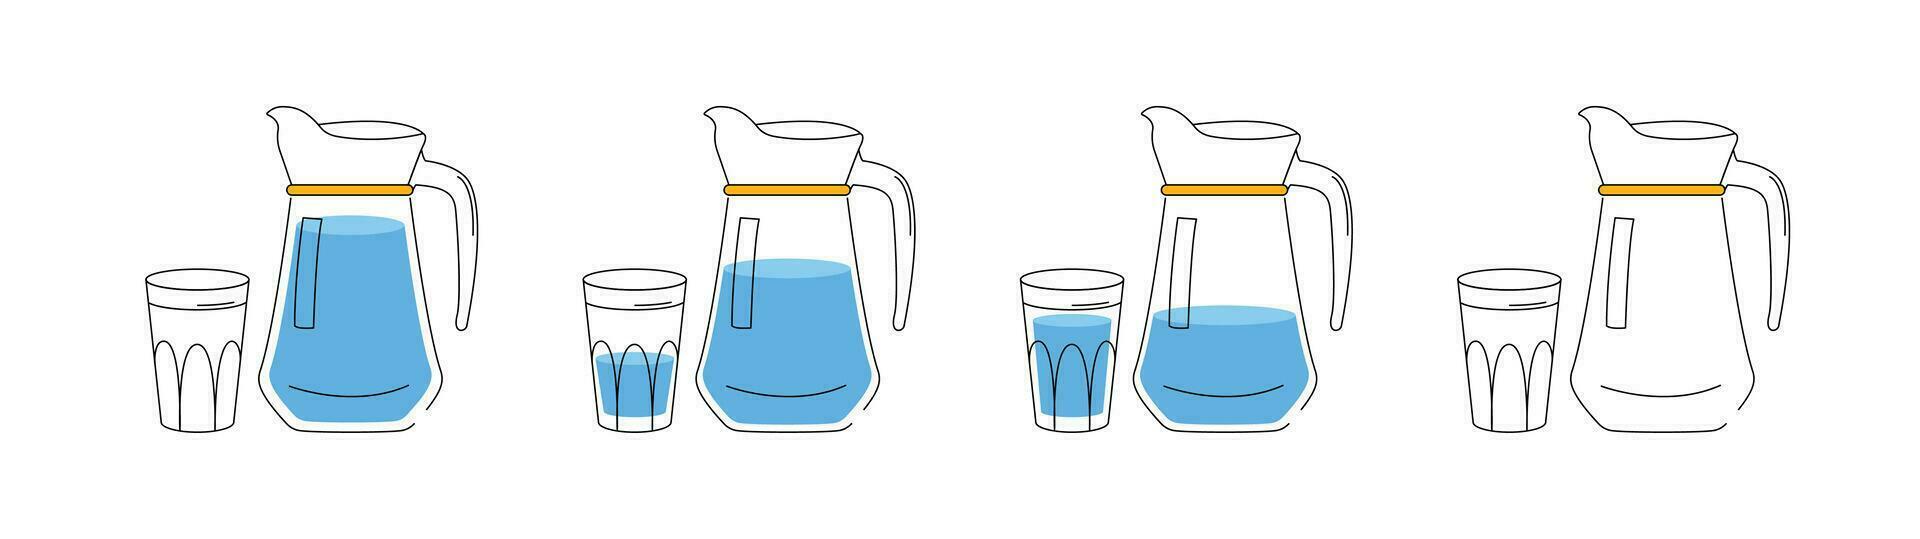 vatten balans begrepp. de bearbeta av dricka vatten. uppsättning av 4 bilder. en kanna och en glas av vatten. de begrepp av dricka tillräckligt vatten genom hela de dag. illustration i en platt stil. vektor